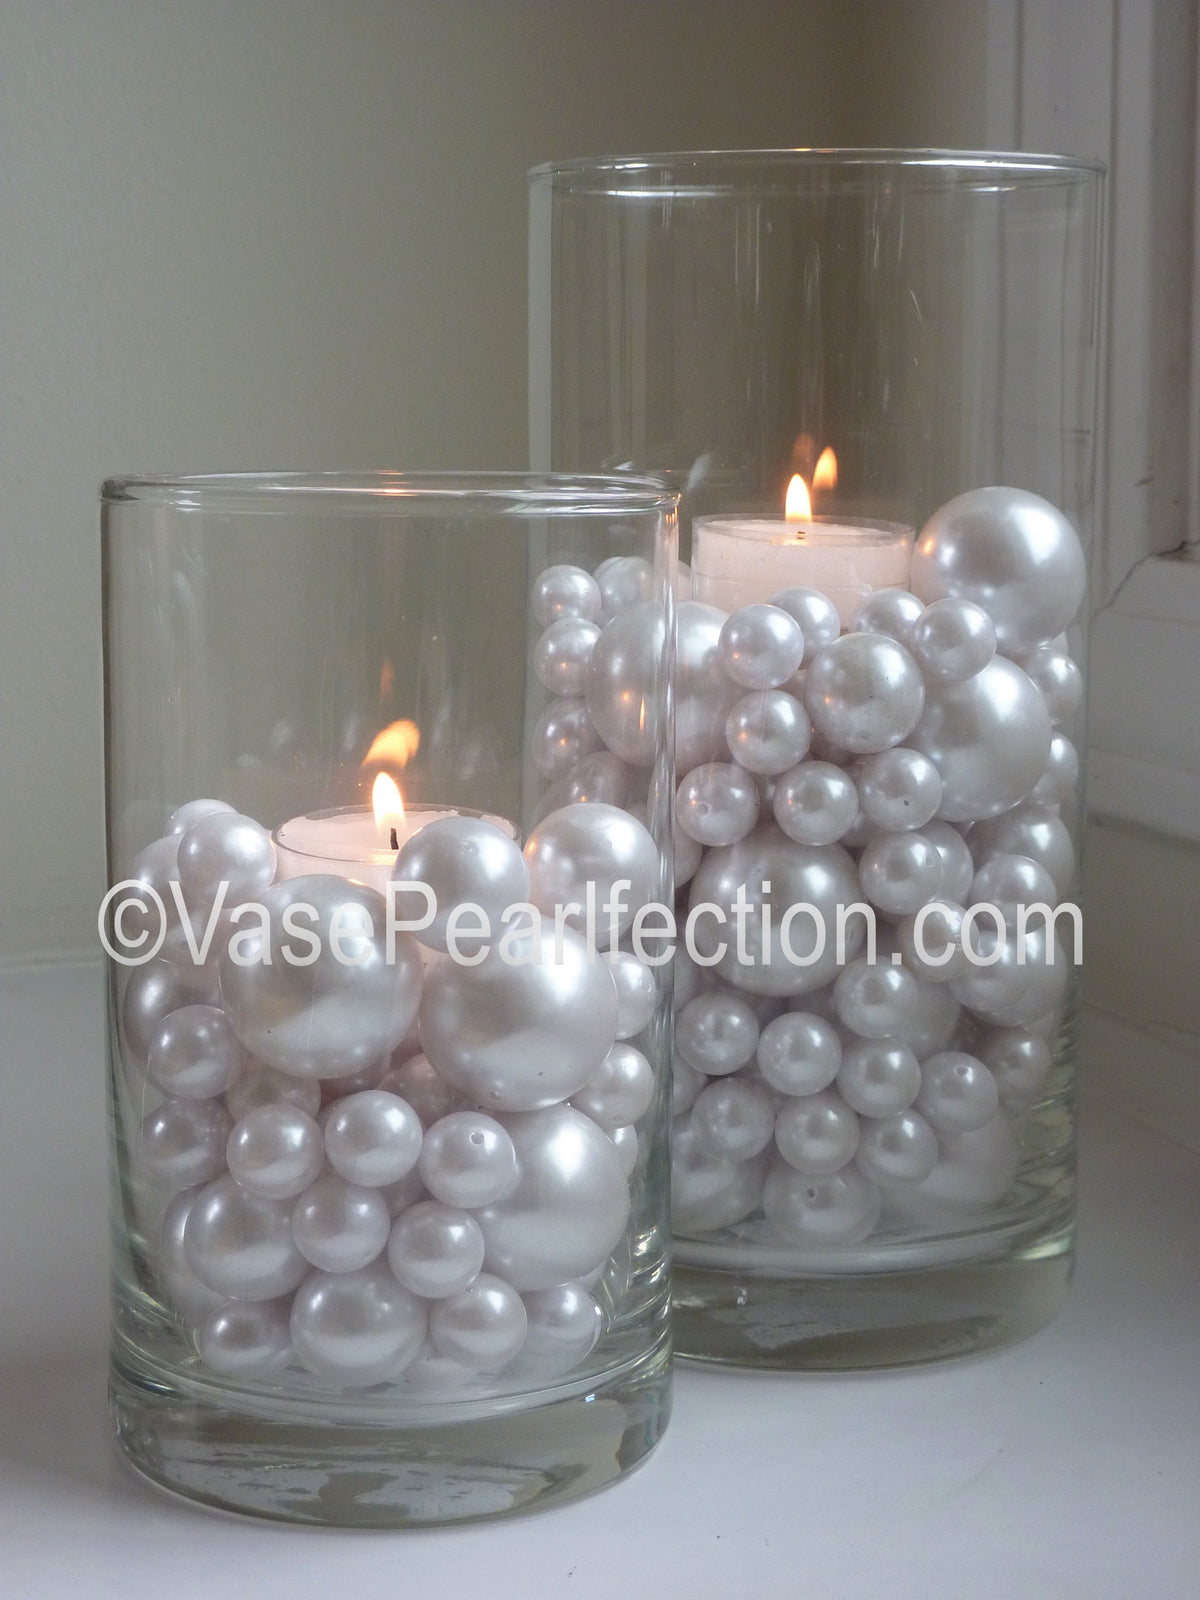 24 bougies chauffe-plat transparentes flottantes - non parfumées